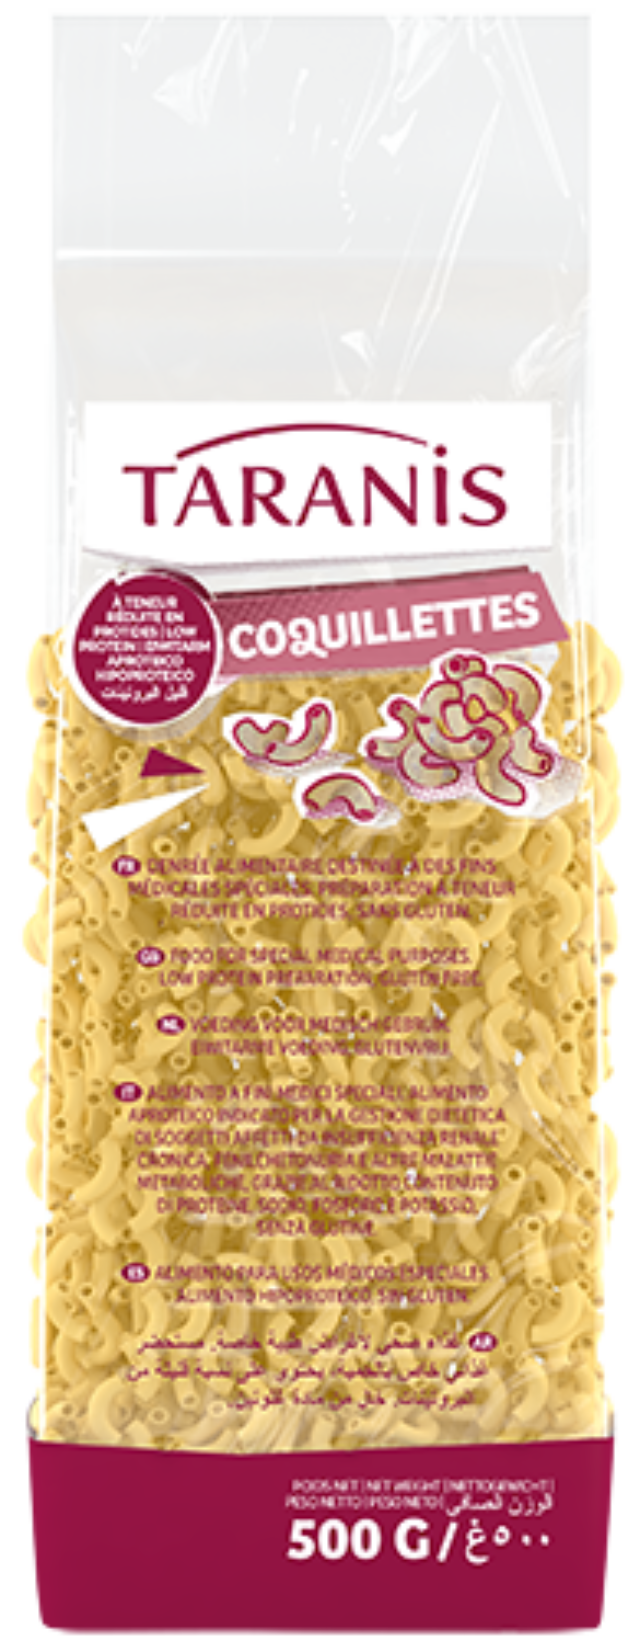 Coquillettes - Taranis